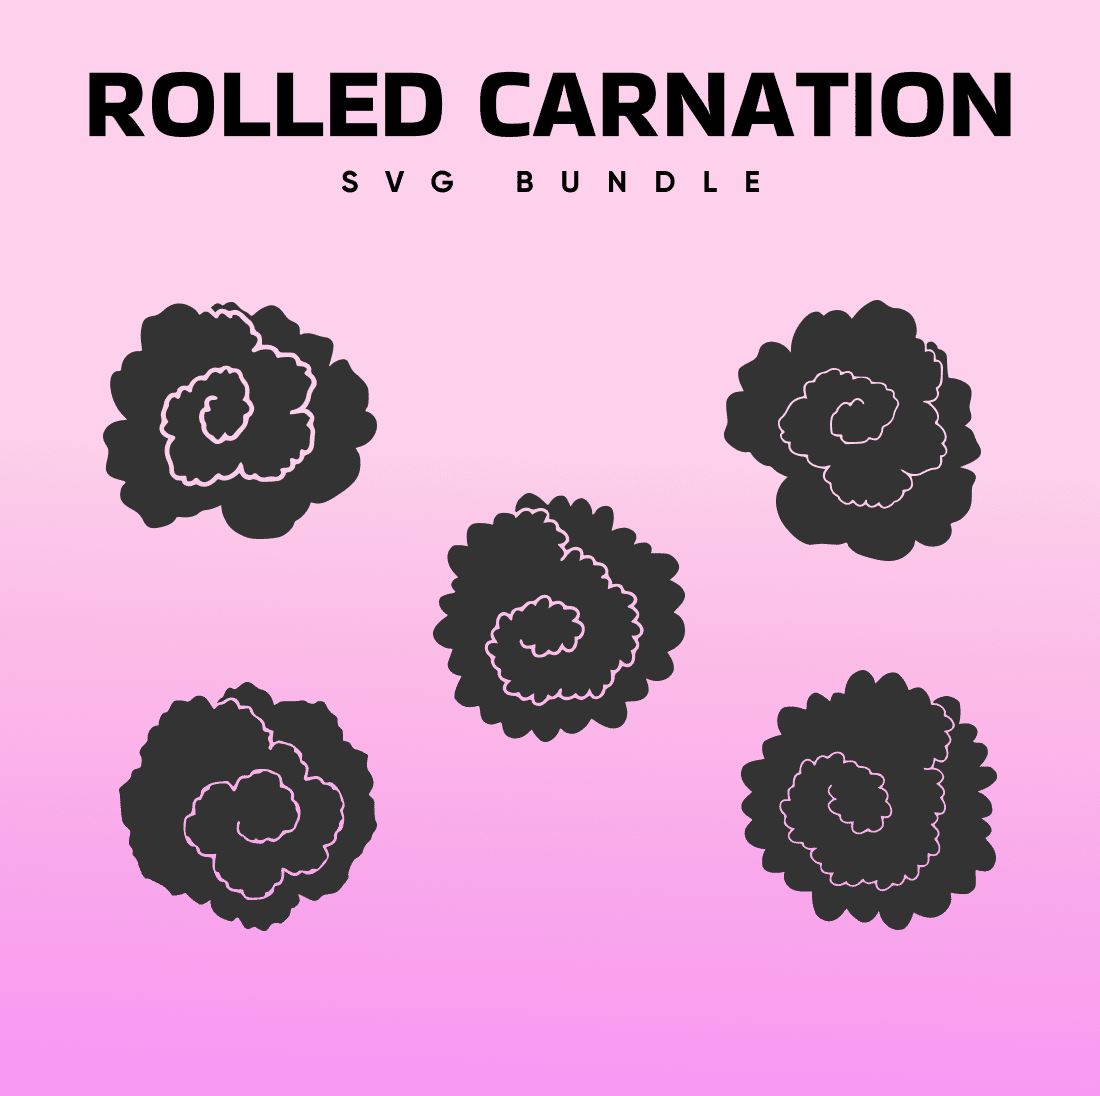 Rolled Carnation SVG.